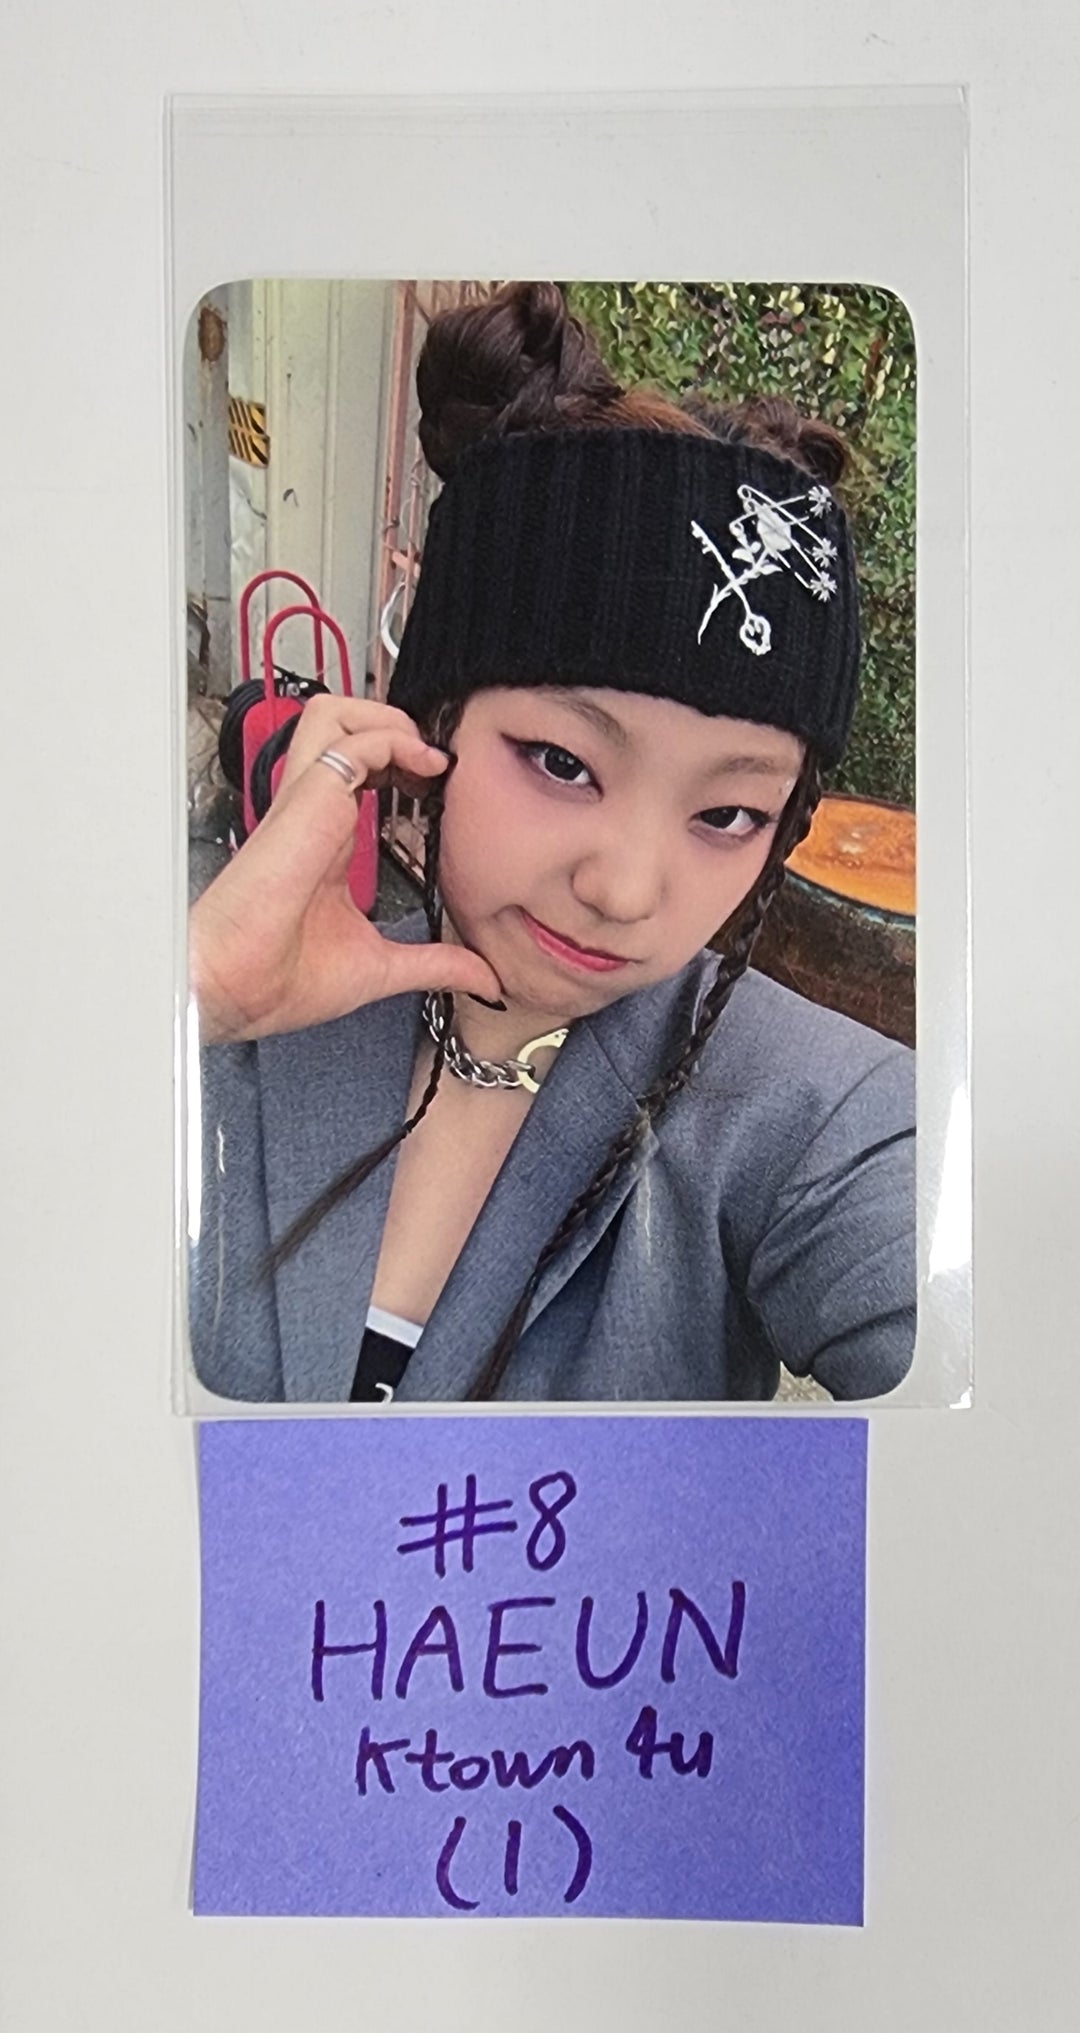 Lapillus "GIRL's ROUND Part. 2" - Ktown4U Fansign Event Photocard Round 2